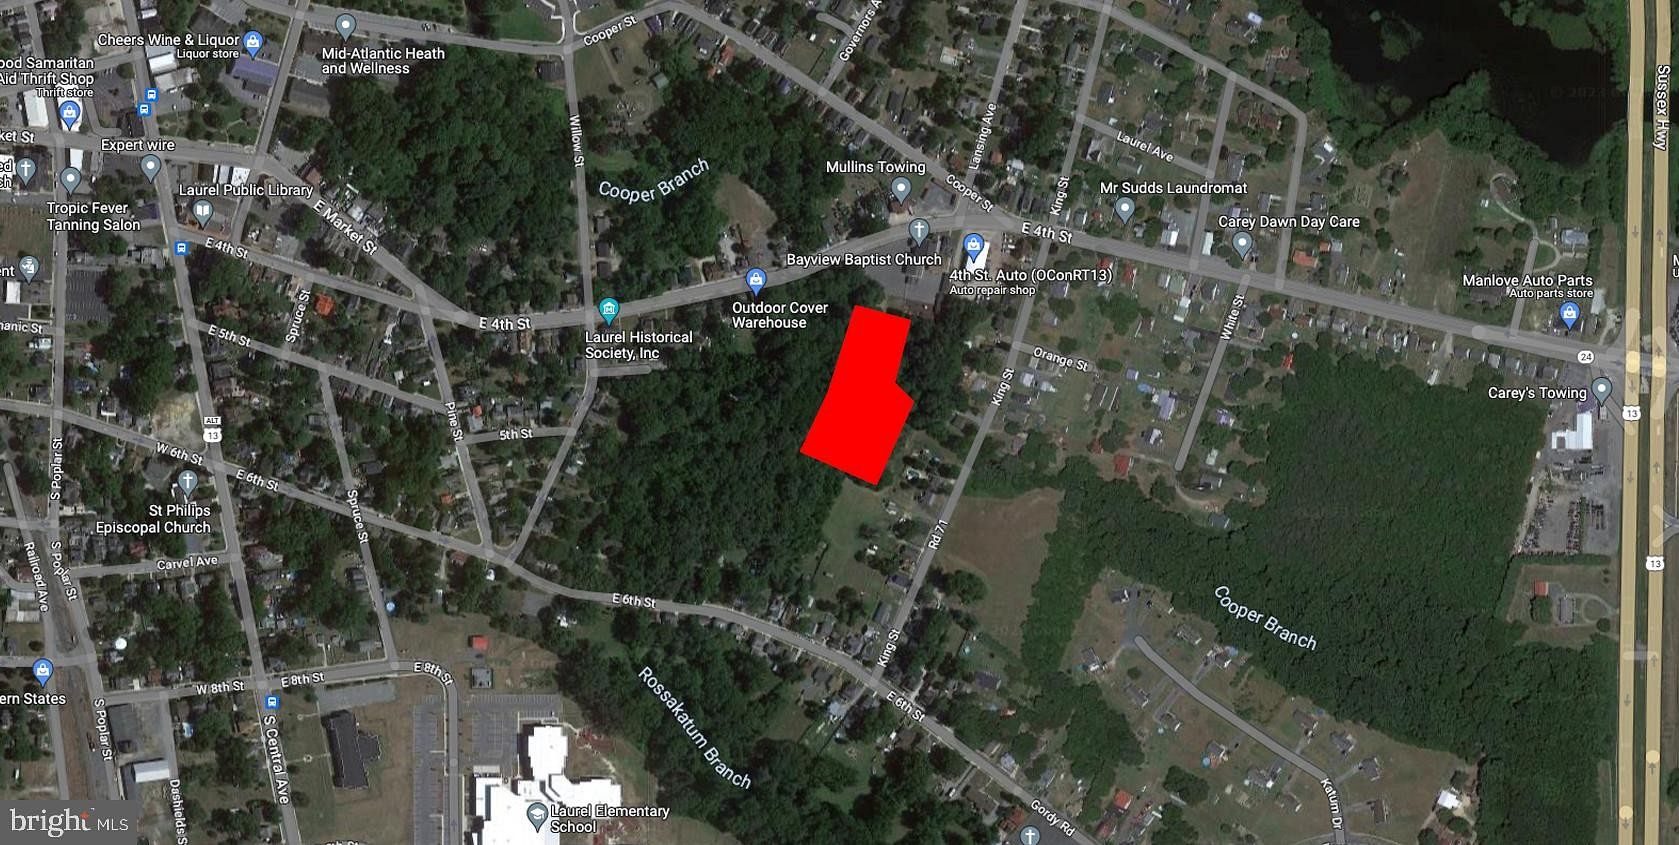 2.2 Acres of Land for Sale in Laurel, Delaware